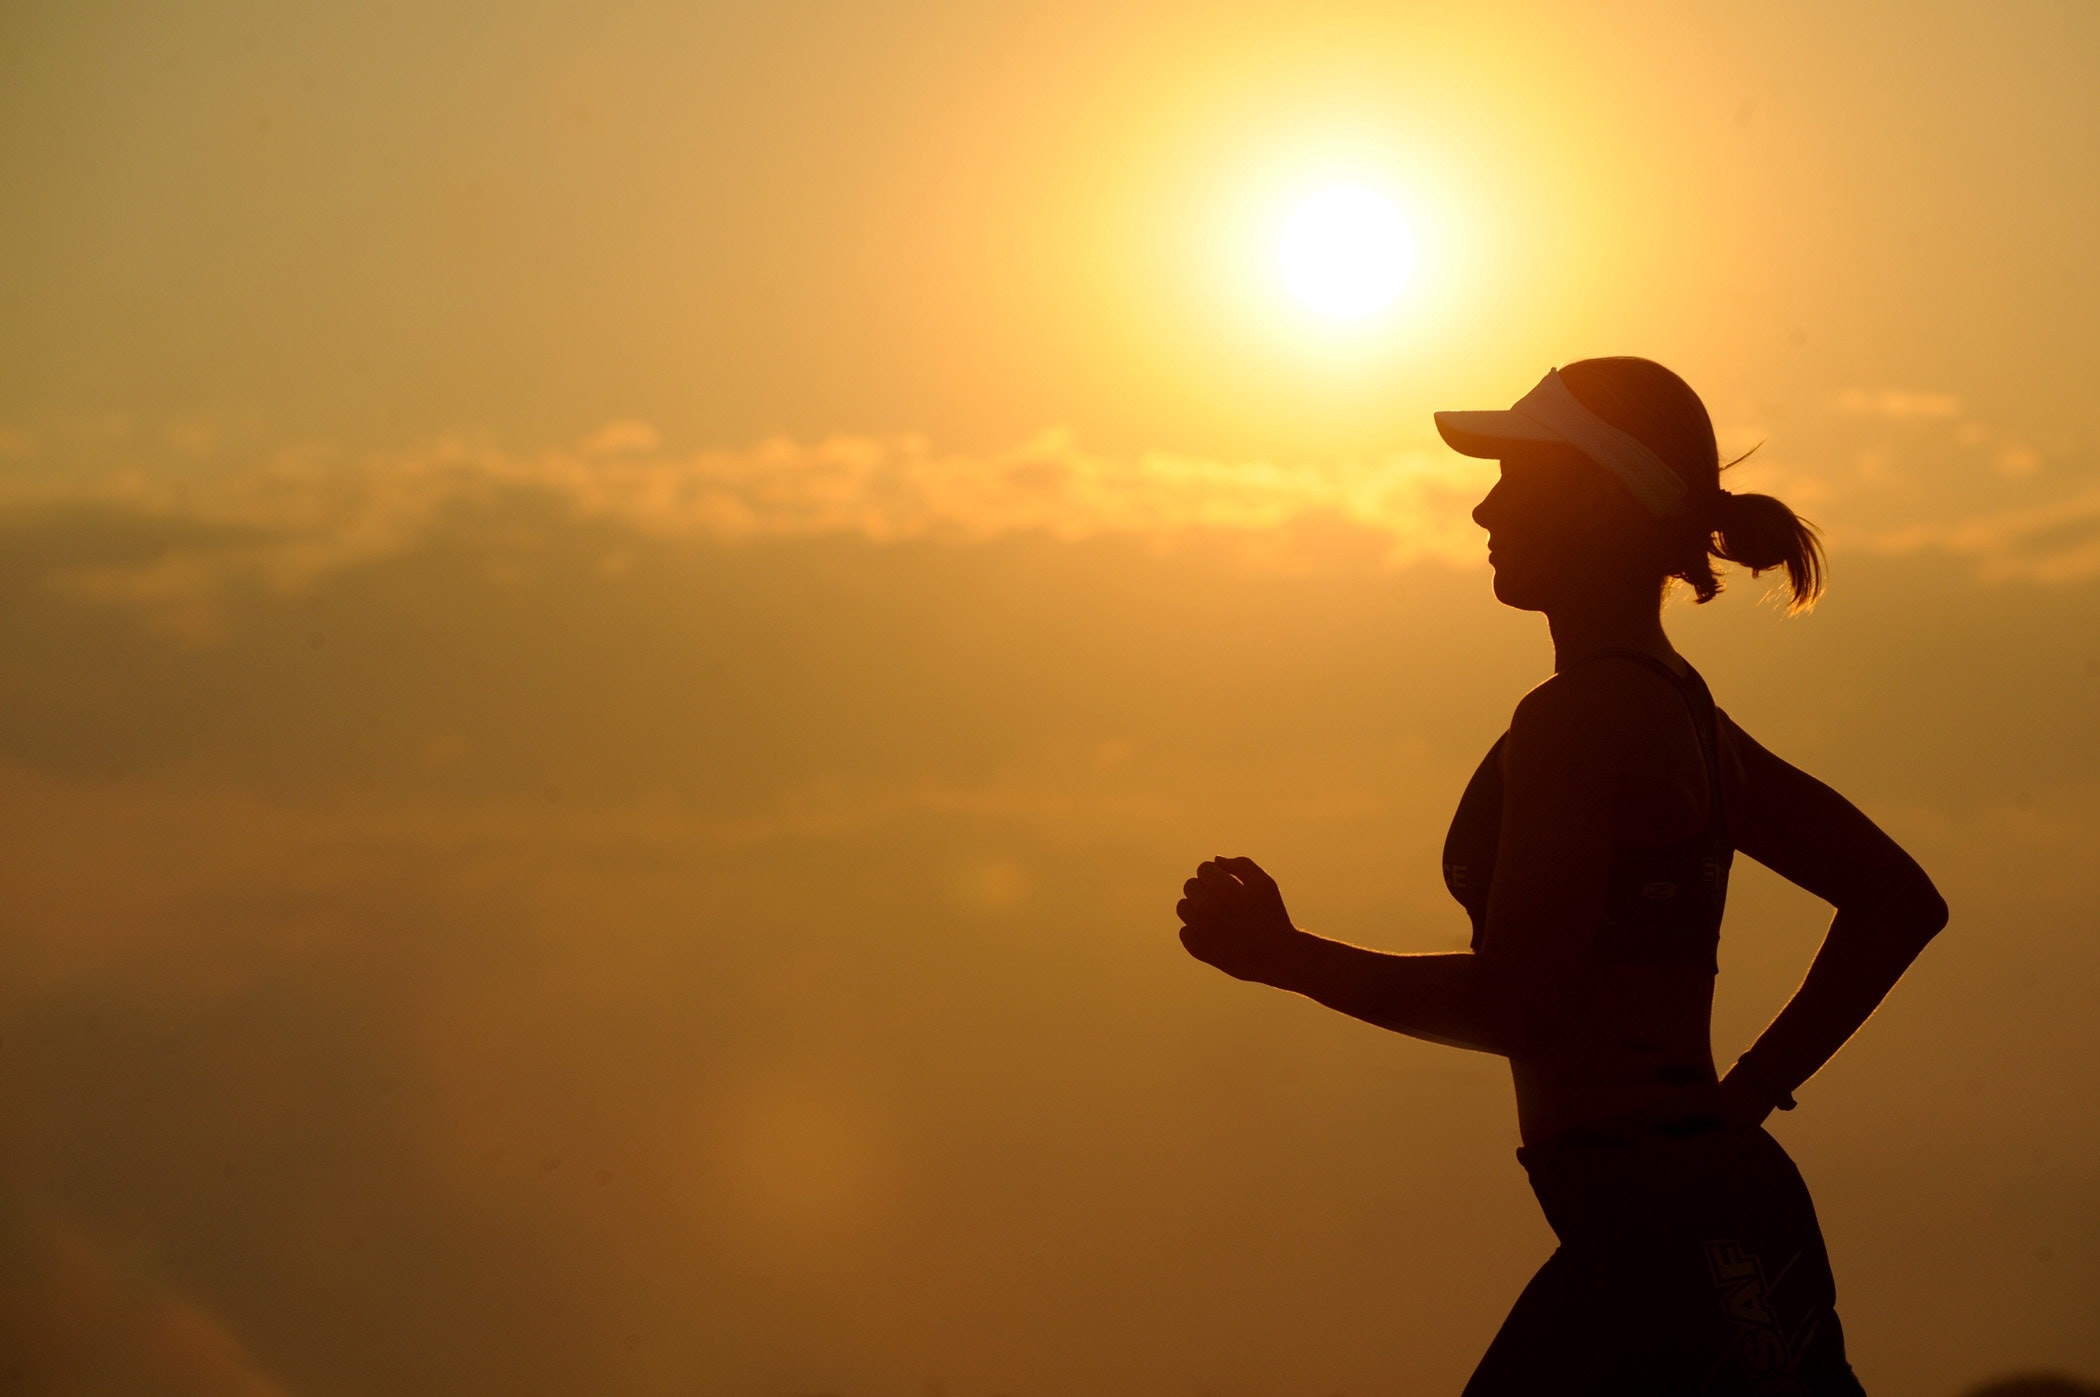 Woman With White Sunvisor Running, Runner, Woman, Training, Sunset, HQ Photo